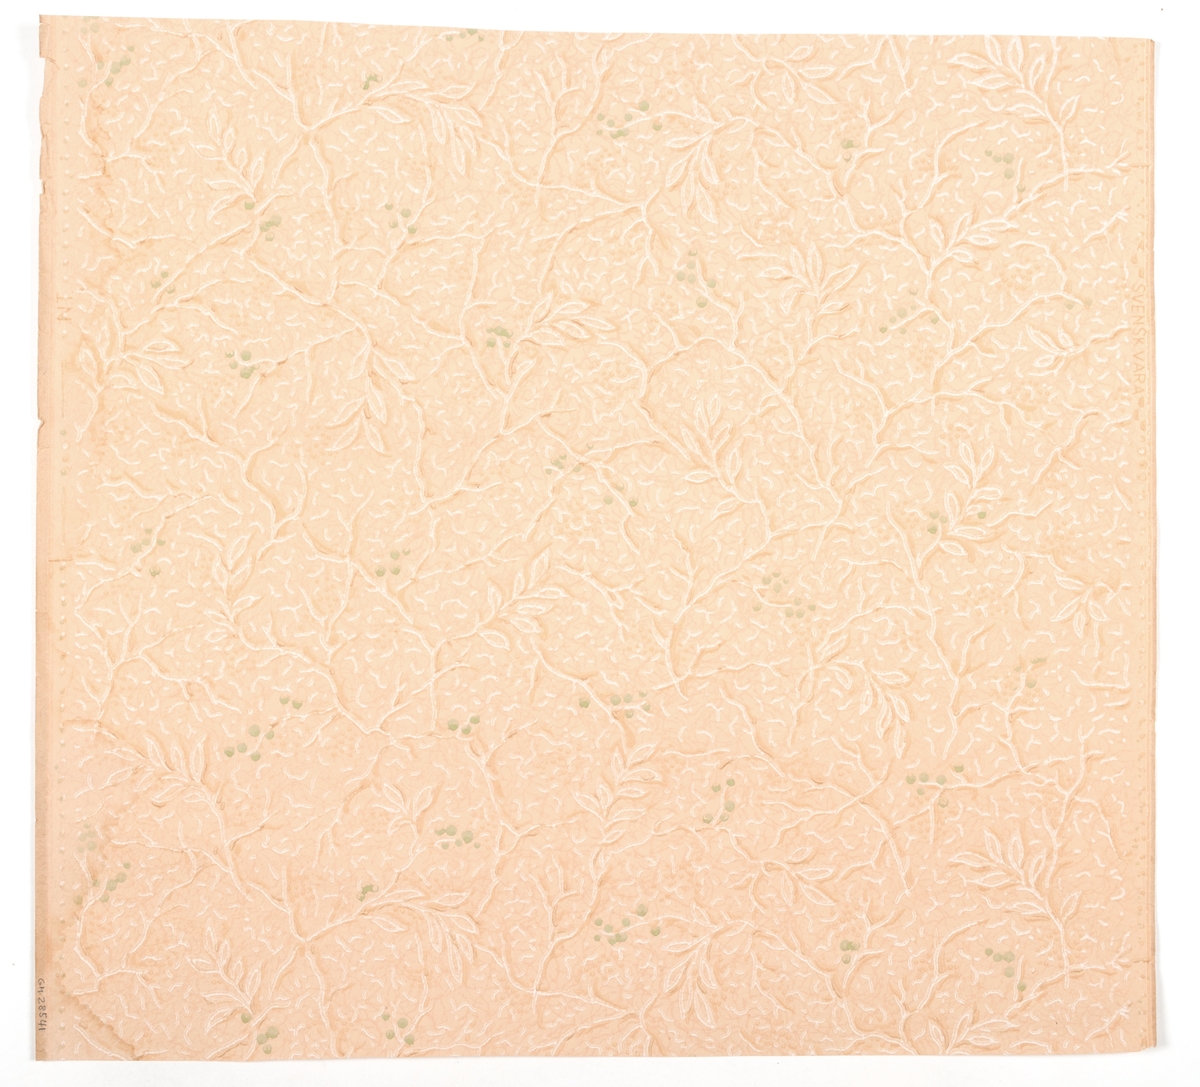 Tapet med yttäckande mönster av blad och grenar i vitt och grönt på gulrosa effektmönstrad botten. Fyra tryckfärger. Tillverkad av Norrköpings tapetfabrik. IB